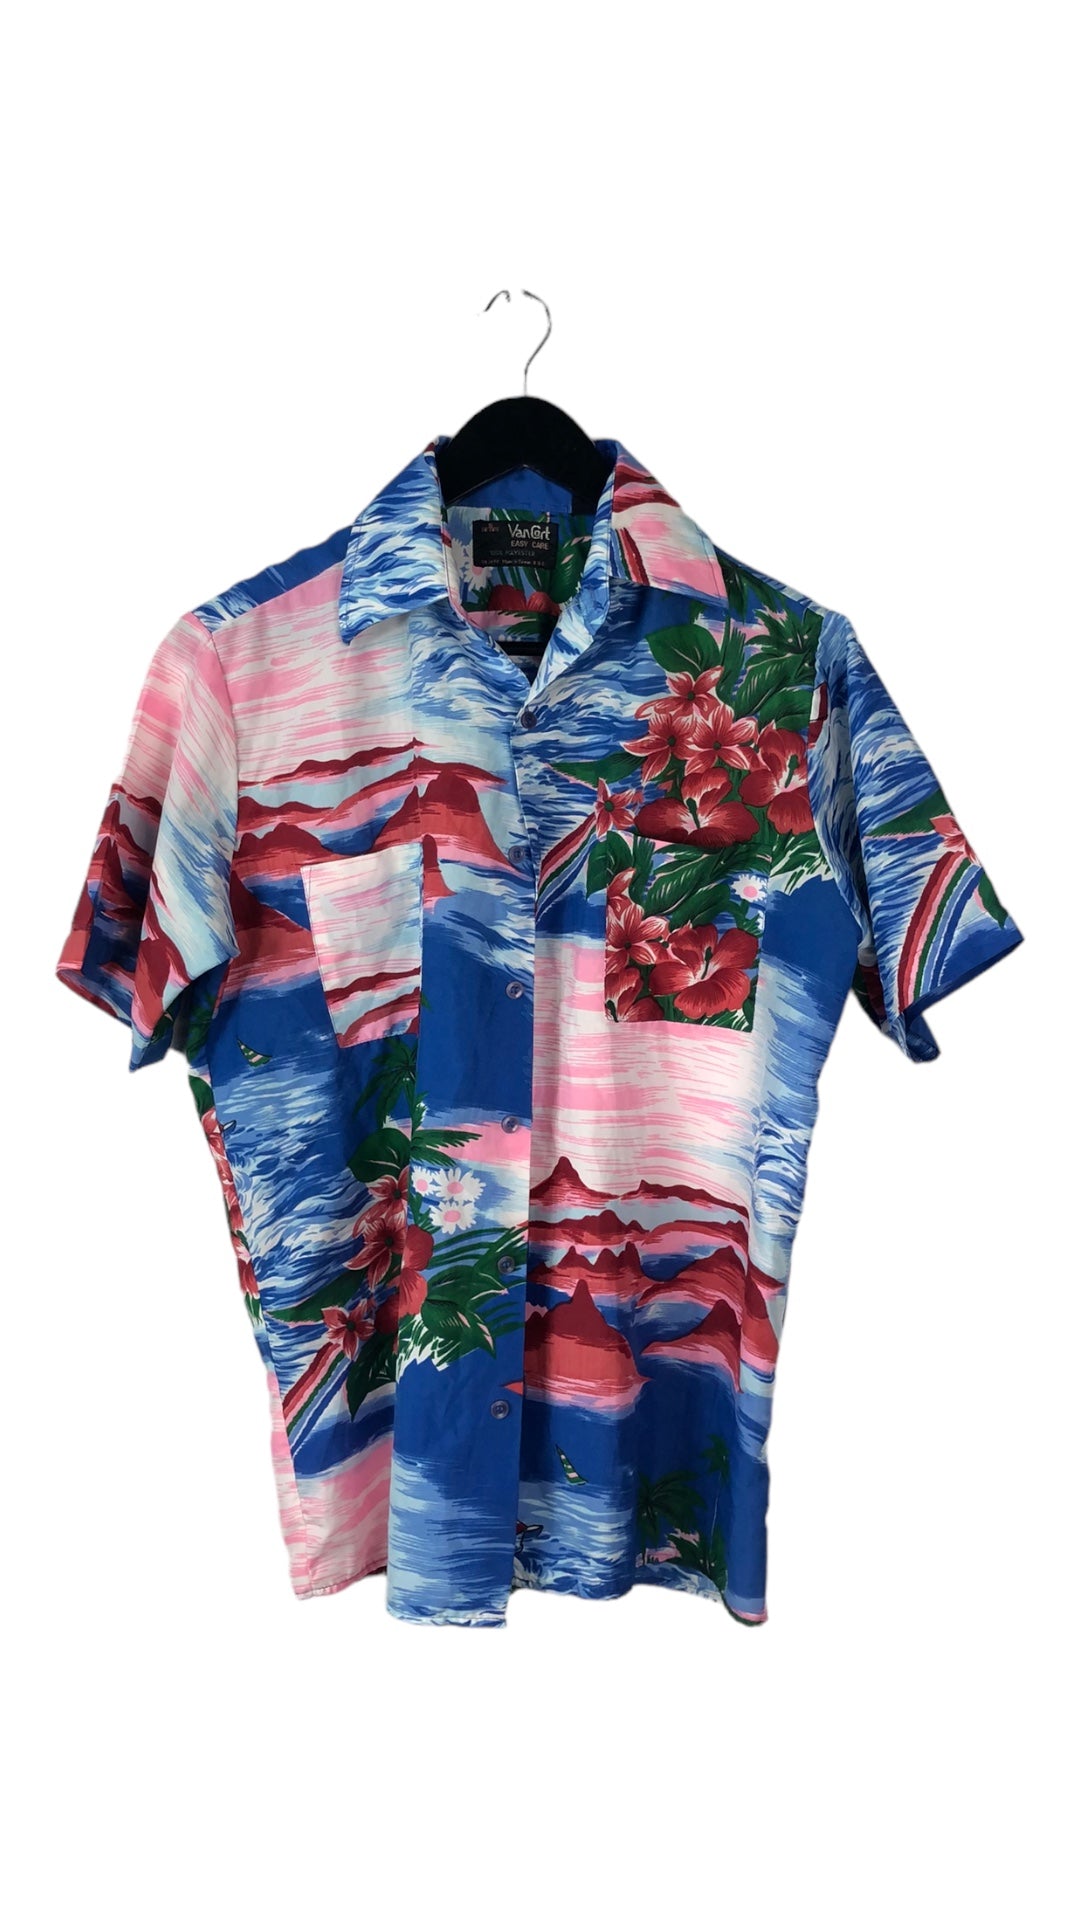 VTG Blue/Pink Hawaiian Button Up Shirt Sz S